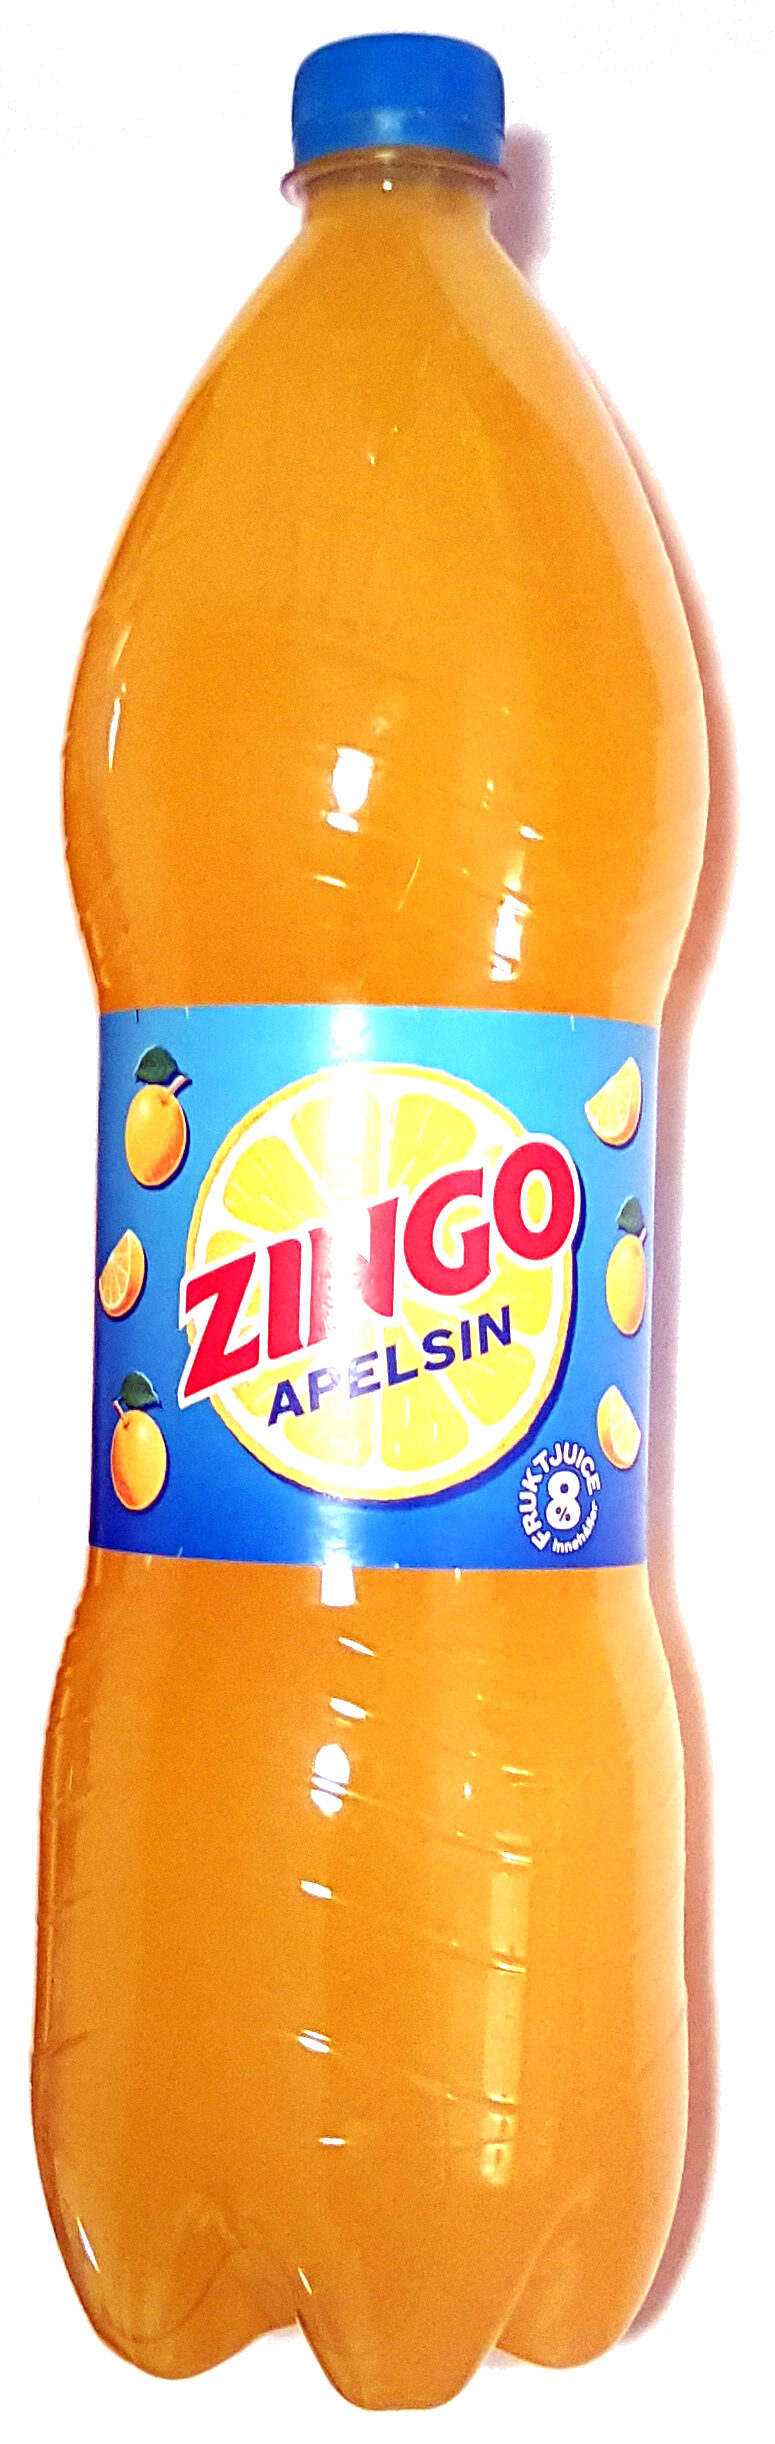 Zingo Apelsin - Produkt